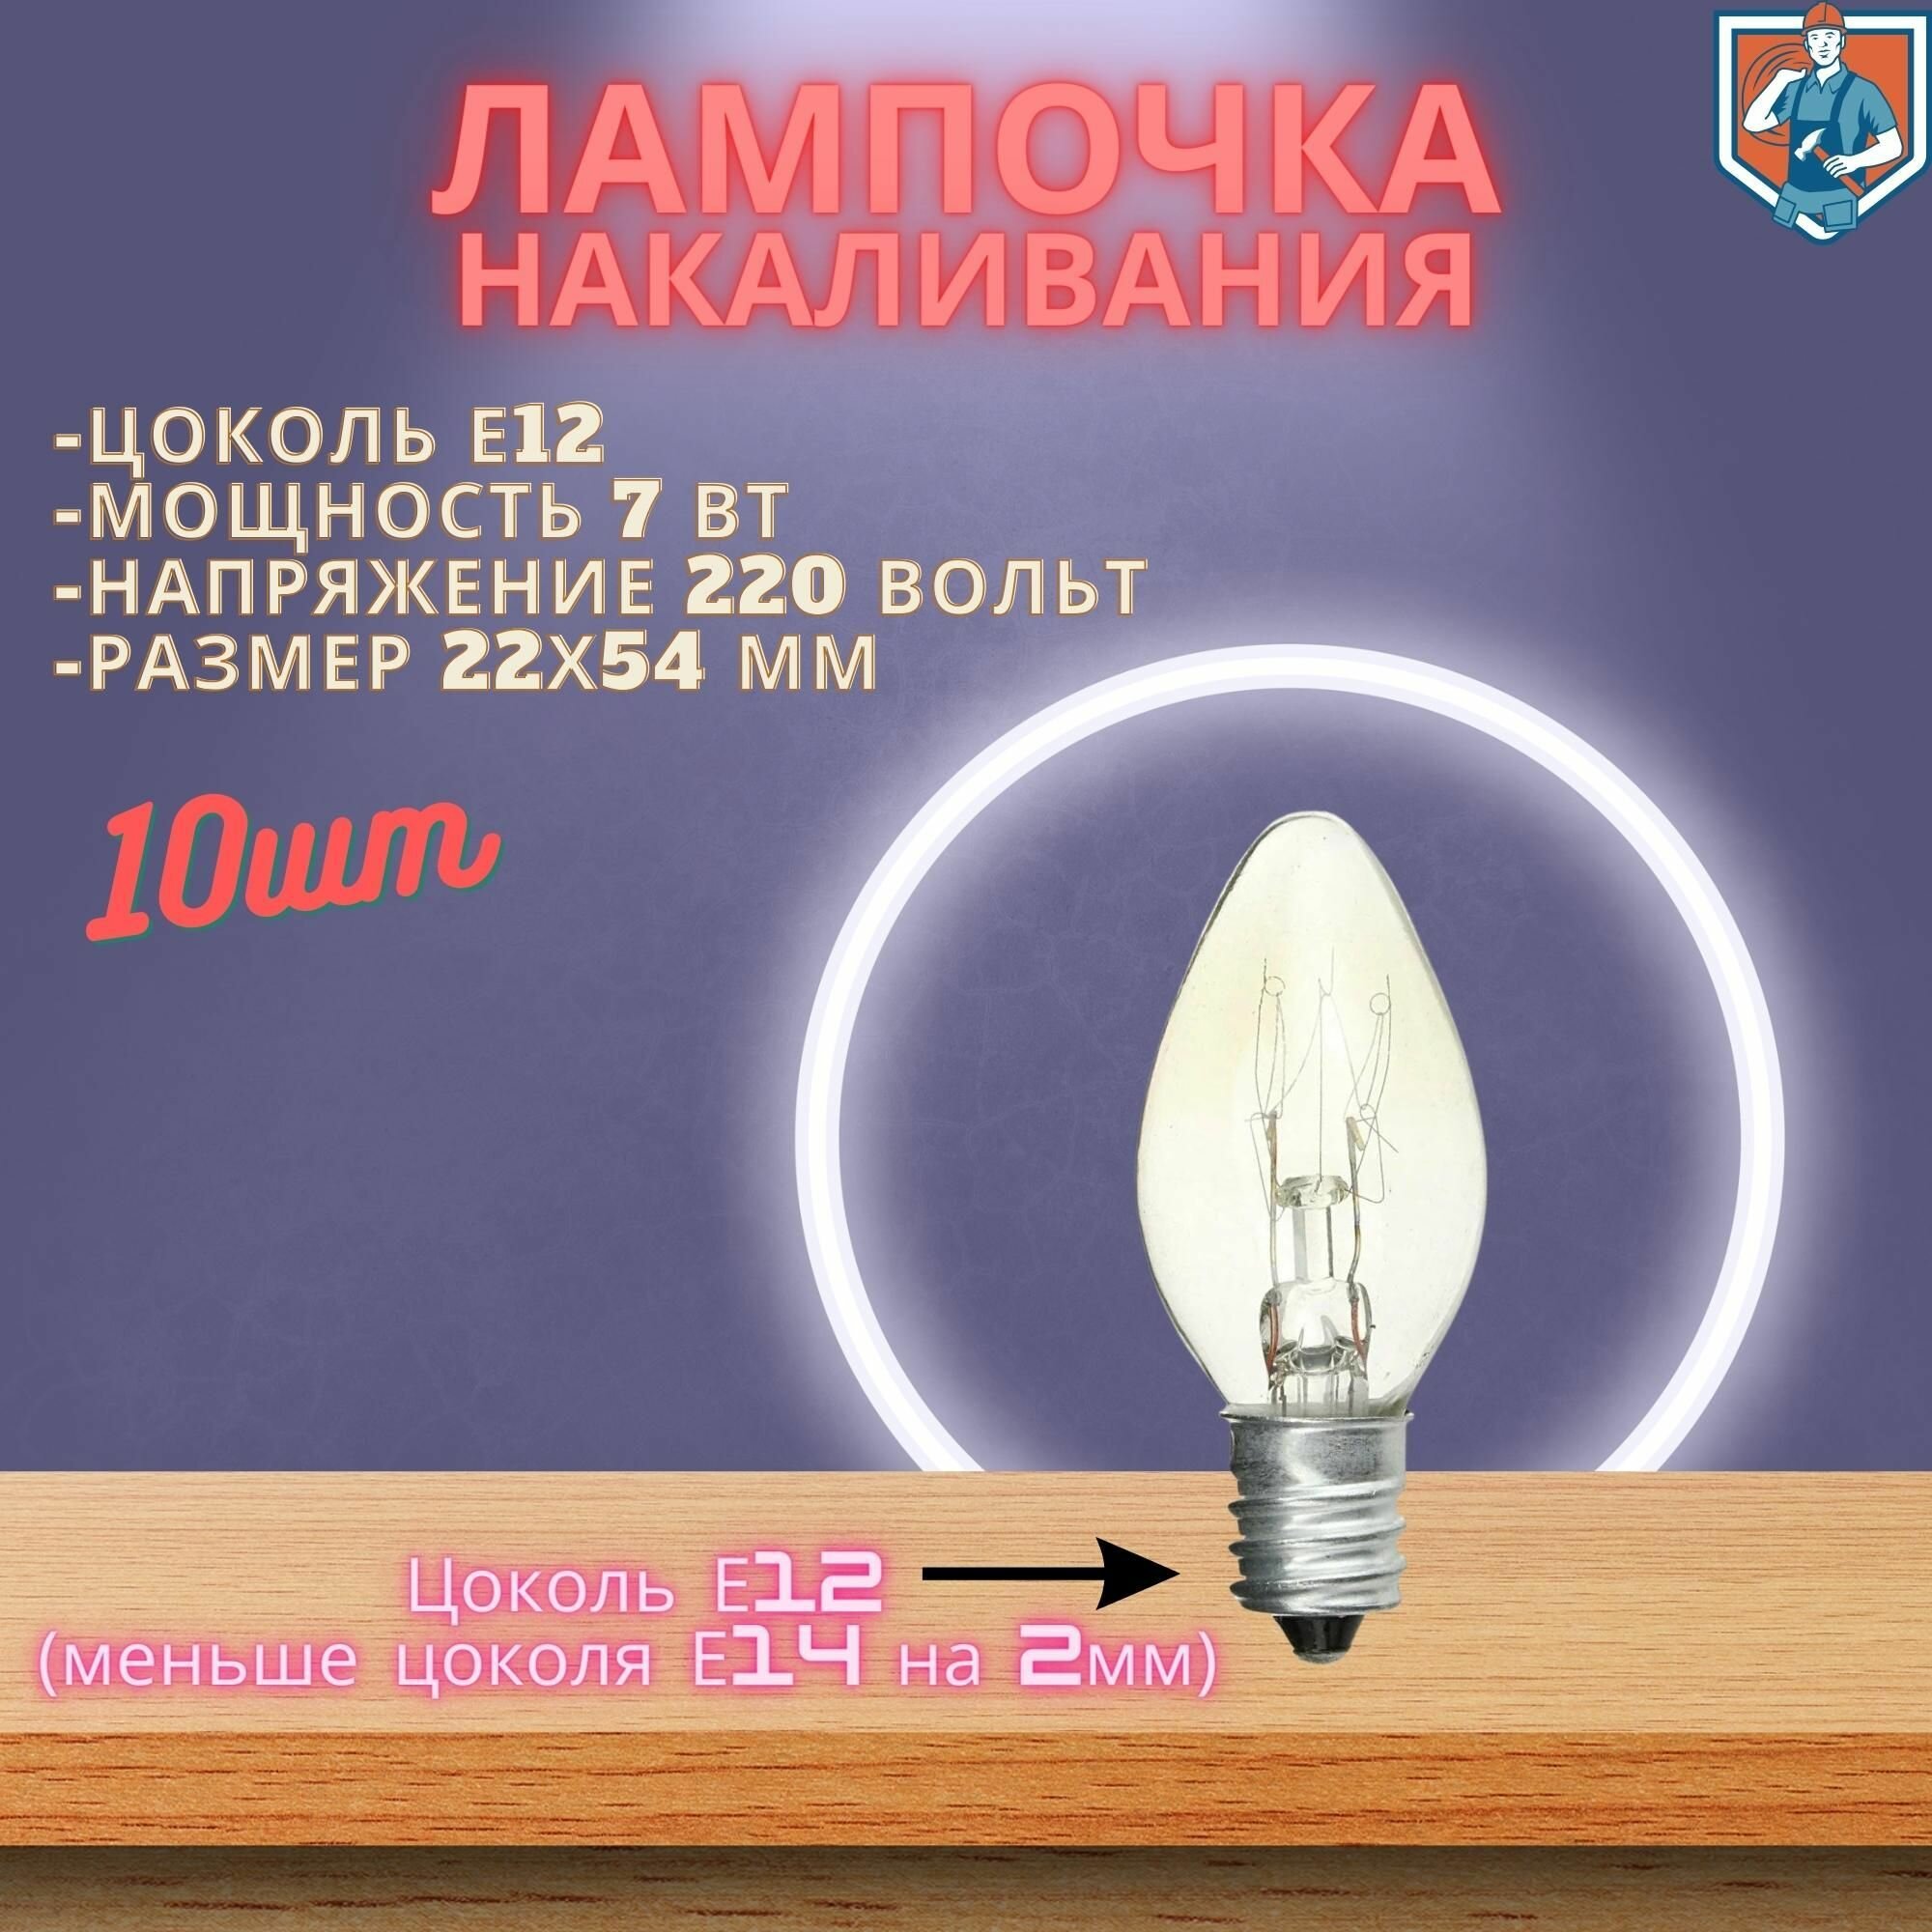 Мини лампочка Е12 7Вт, 10шт (Oshan Makeeta)